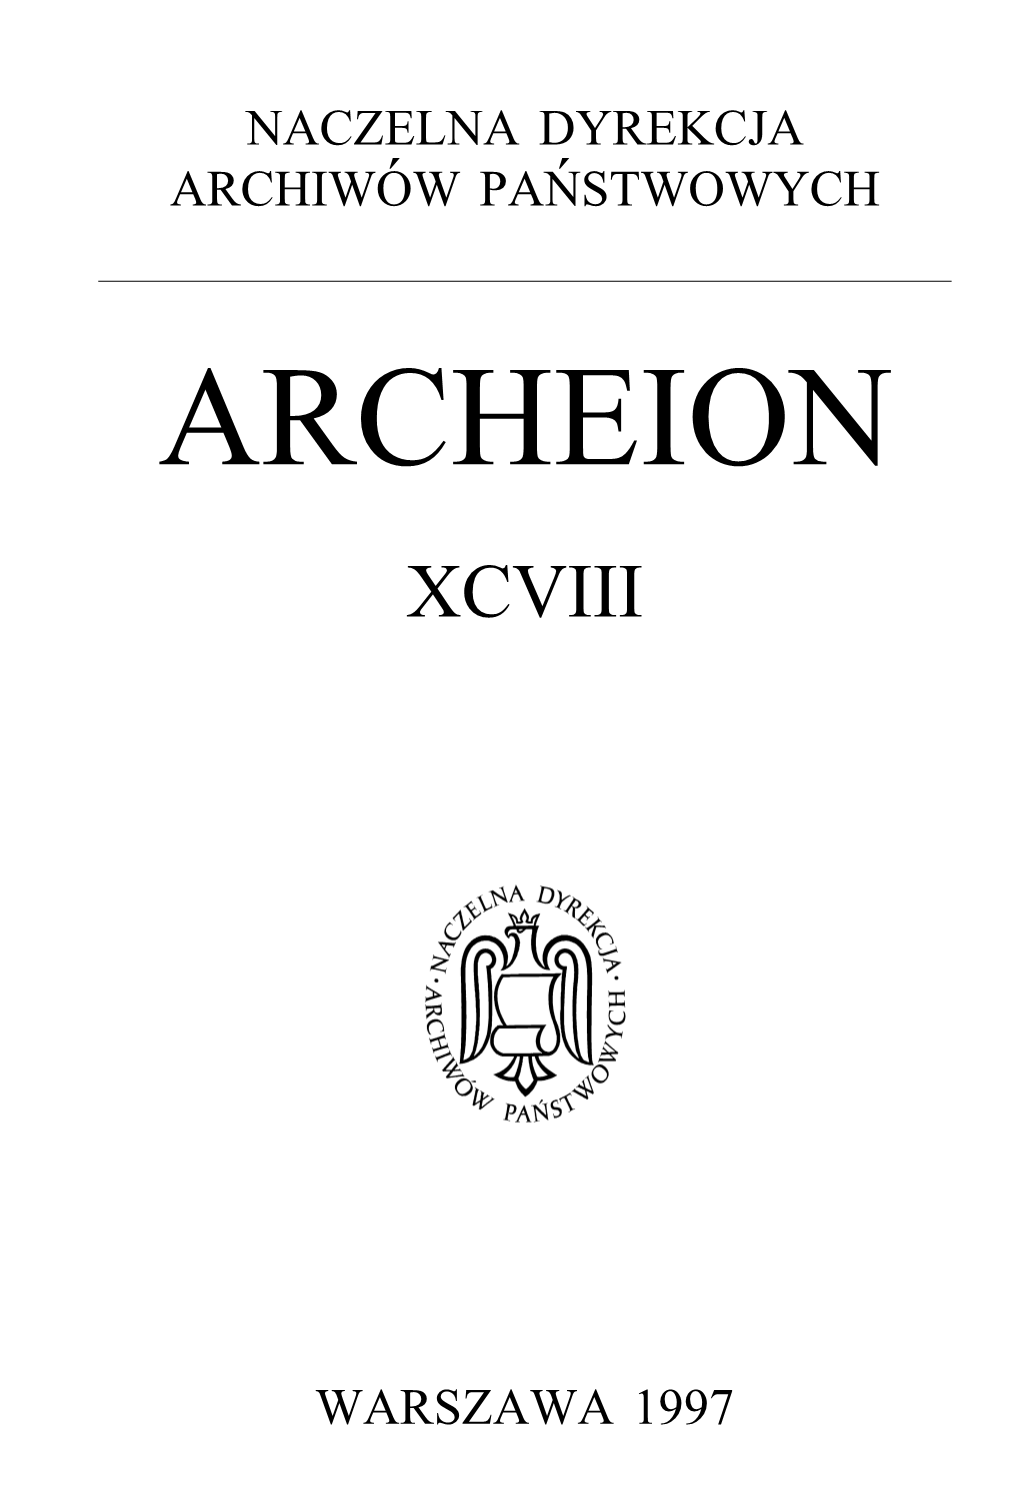 Archeion Xcviii